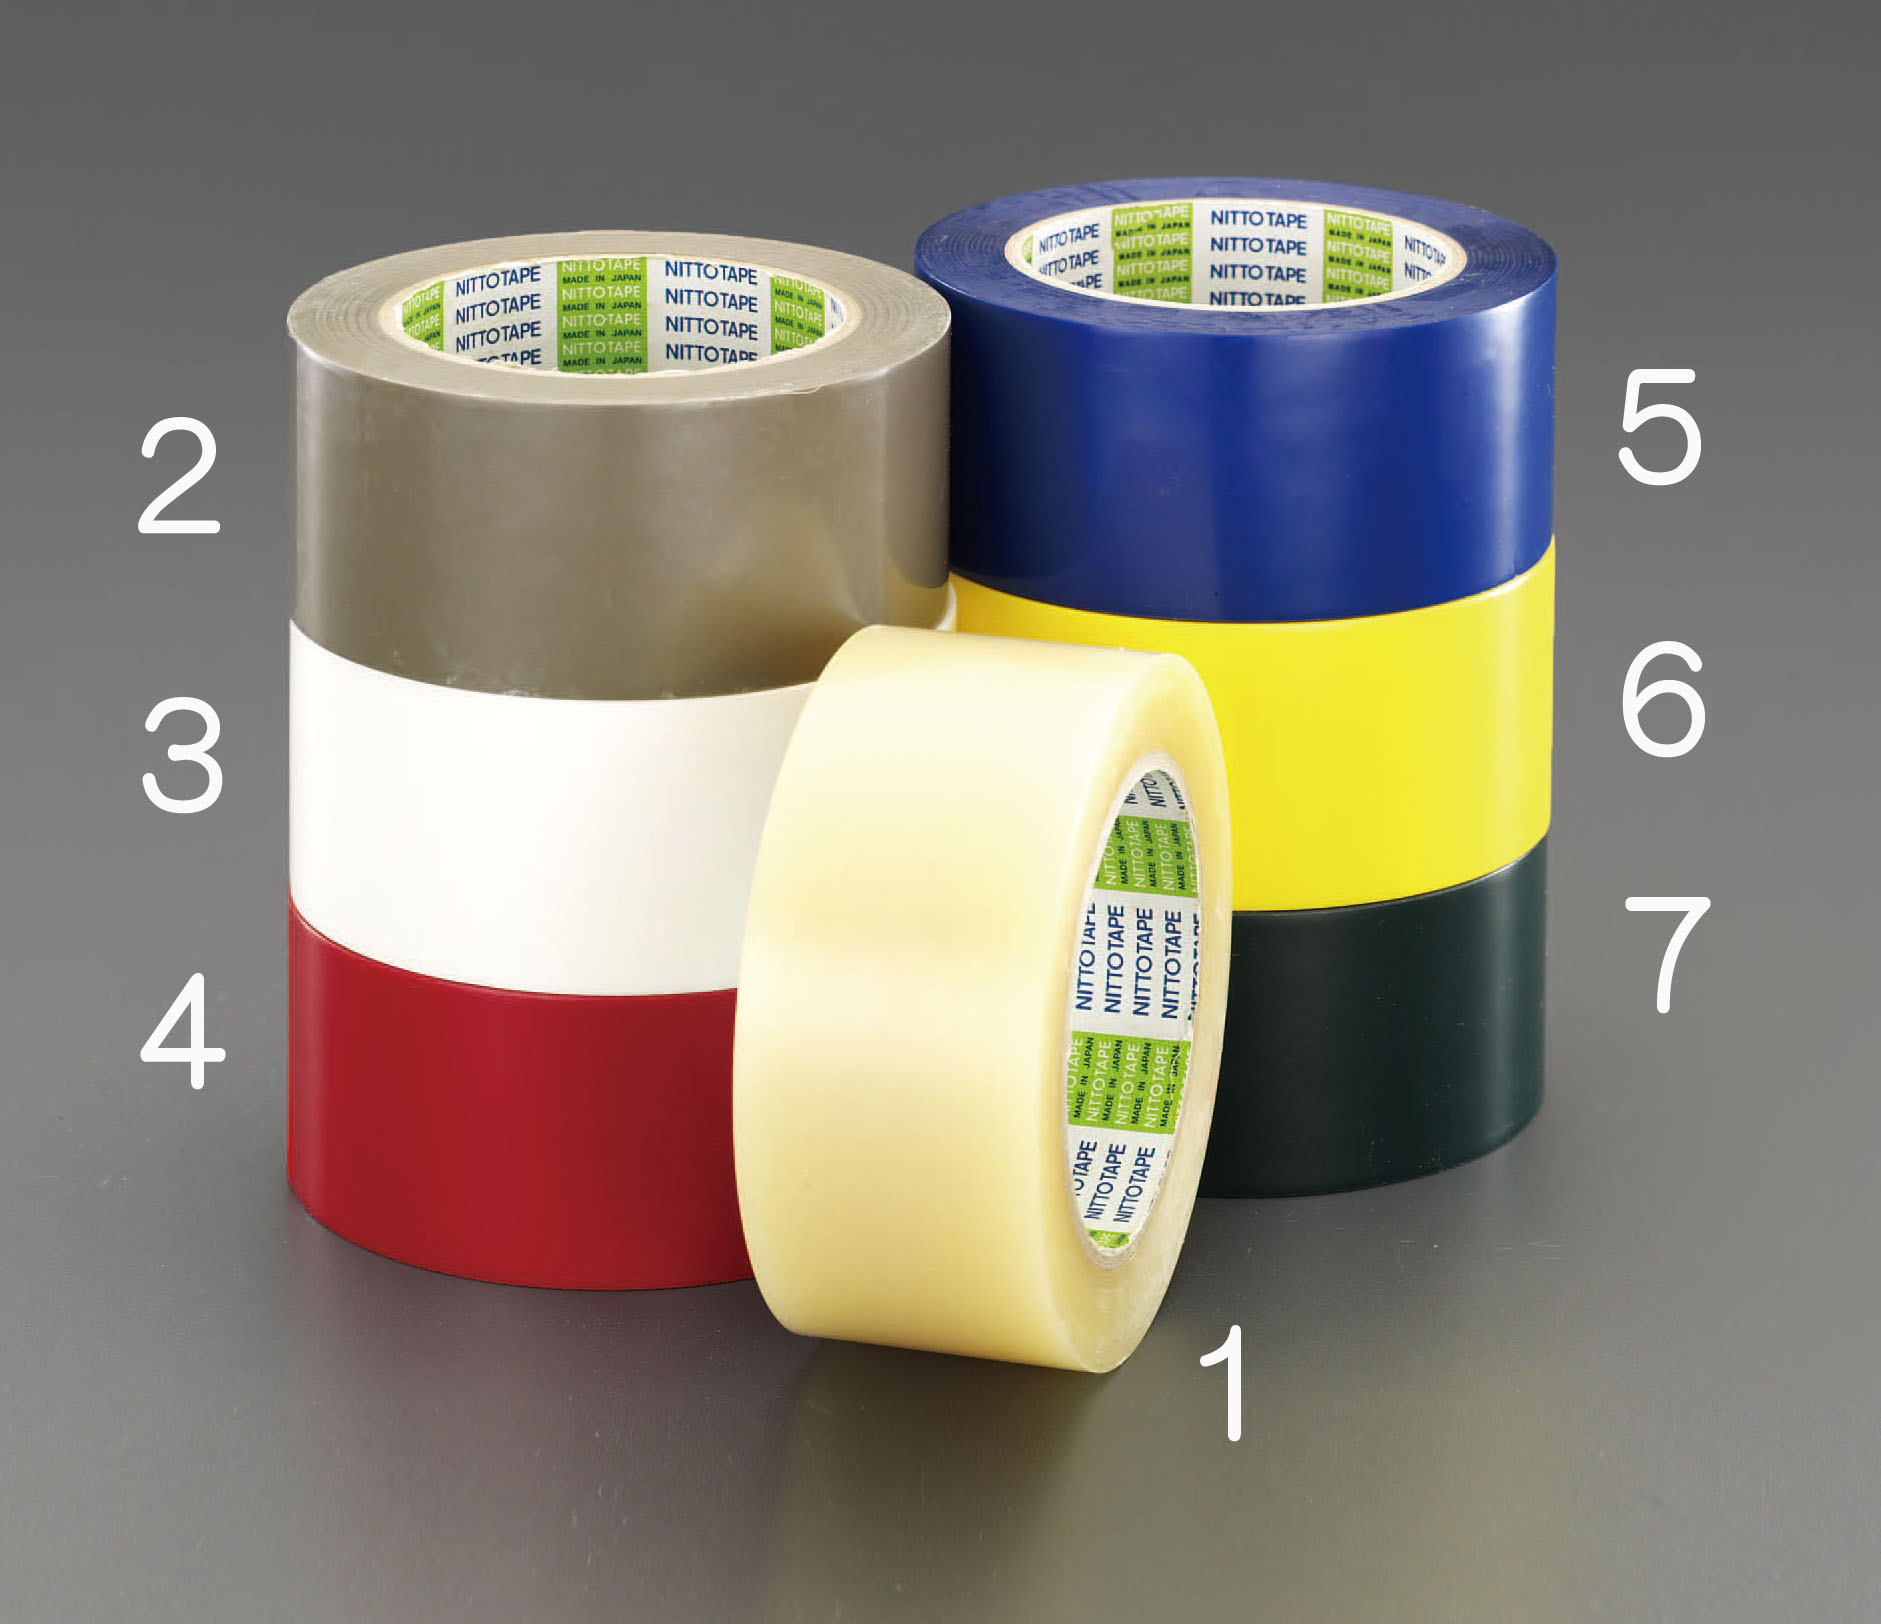 布粘着・薄手型粘着・透明・手切れ・クラフト・梱包用各種粘着テープ